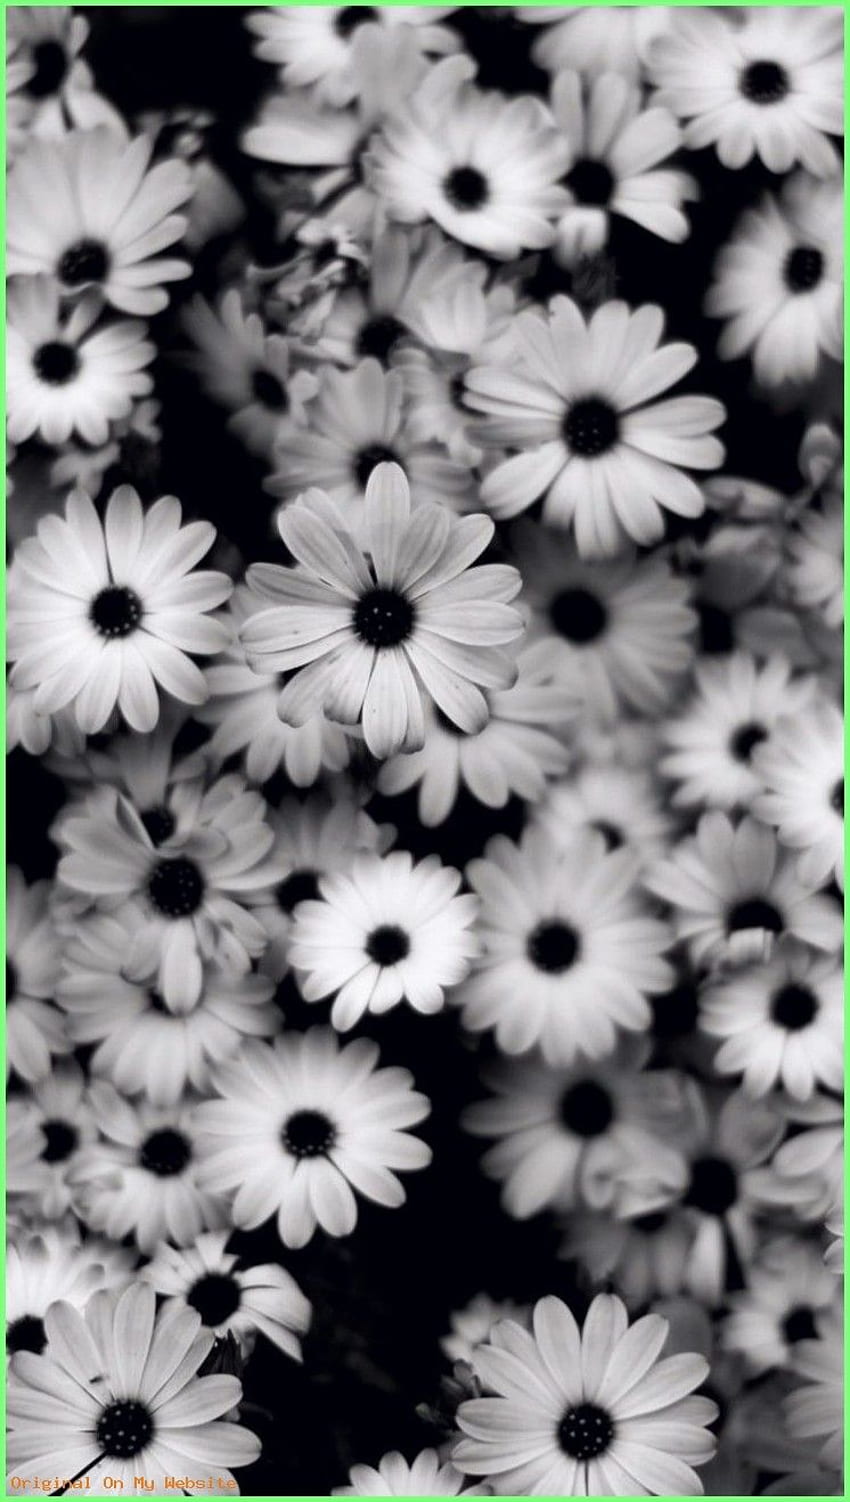 Hintergrundbilder iphone - Preview black white, flowers, gre. Black iphone dark, White iphone background, Black and white background HD phone wallpaper